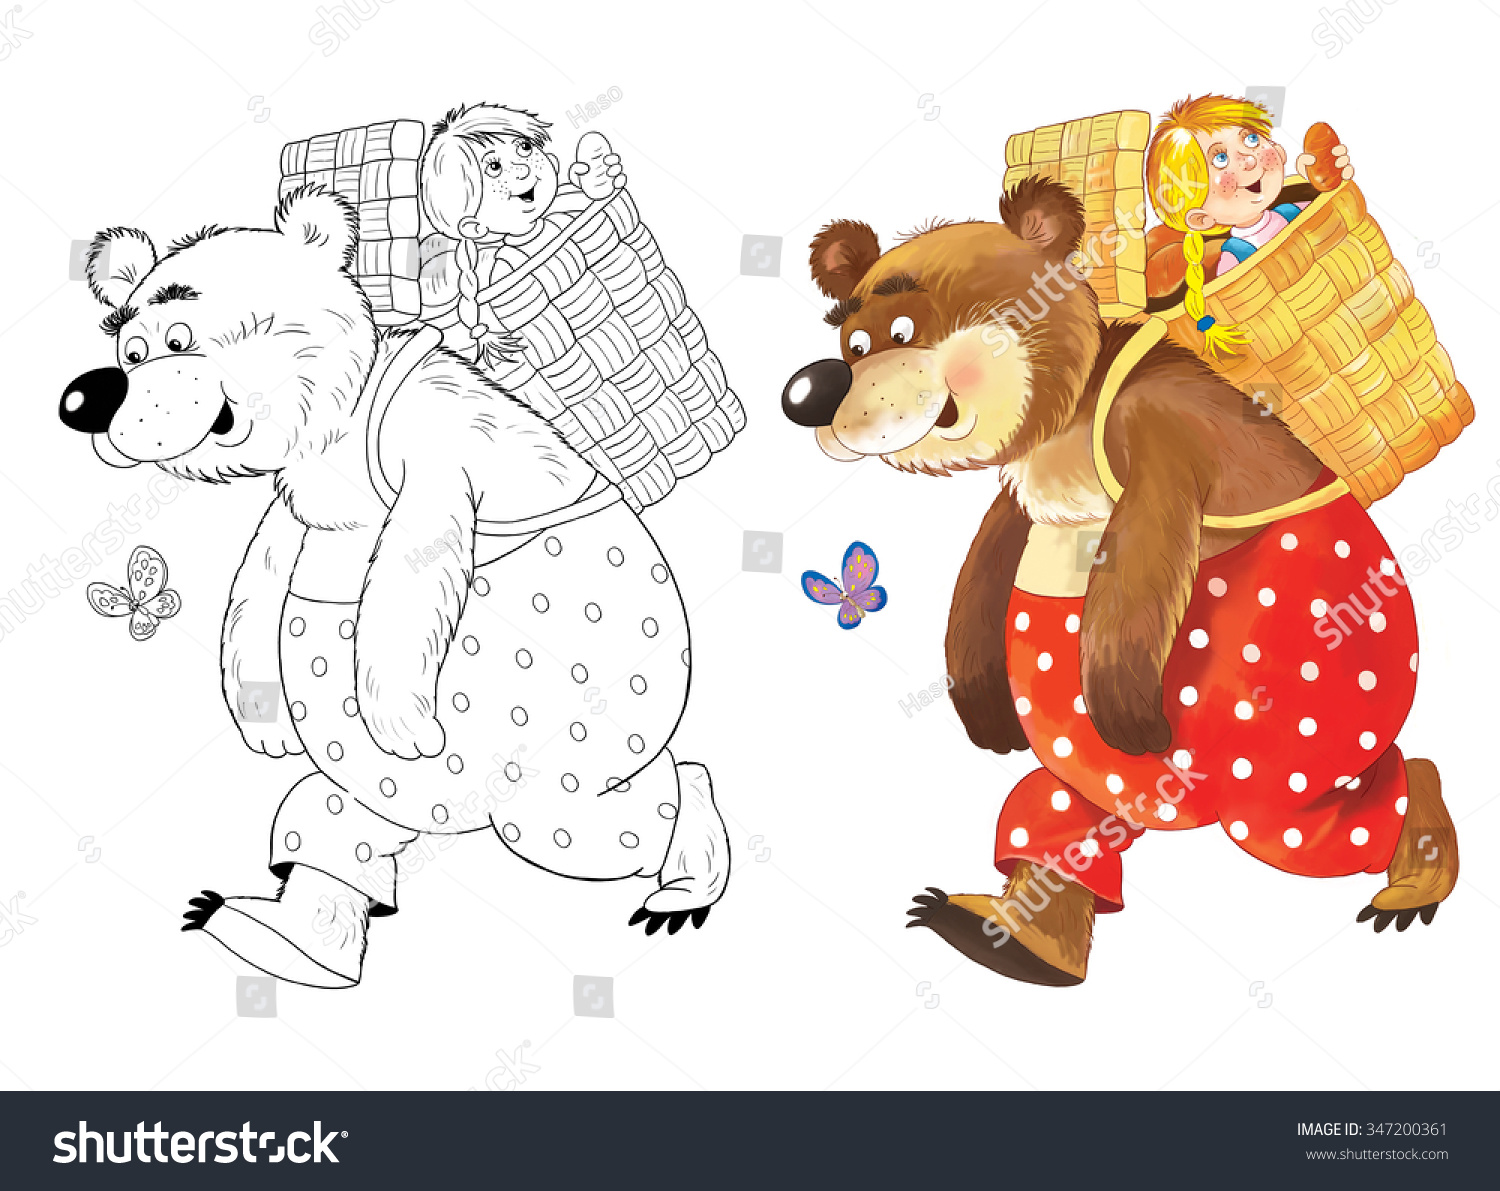 Медведь несет Машу в корзине Маша и медведь